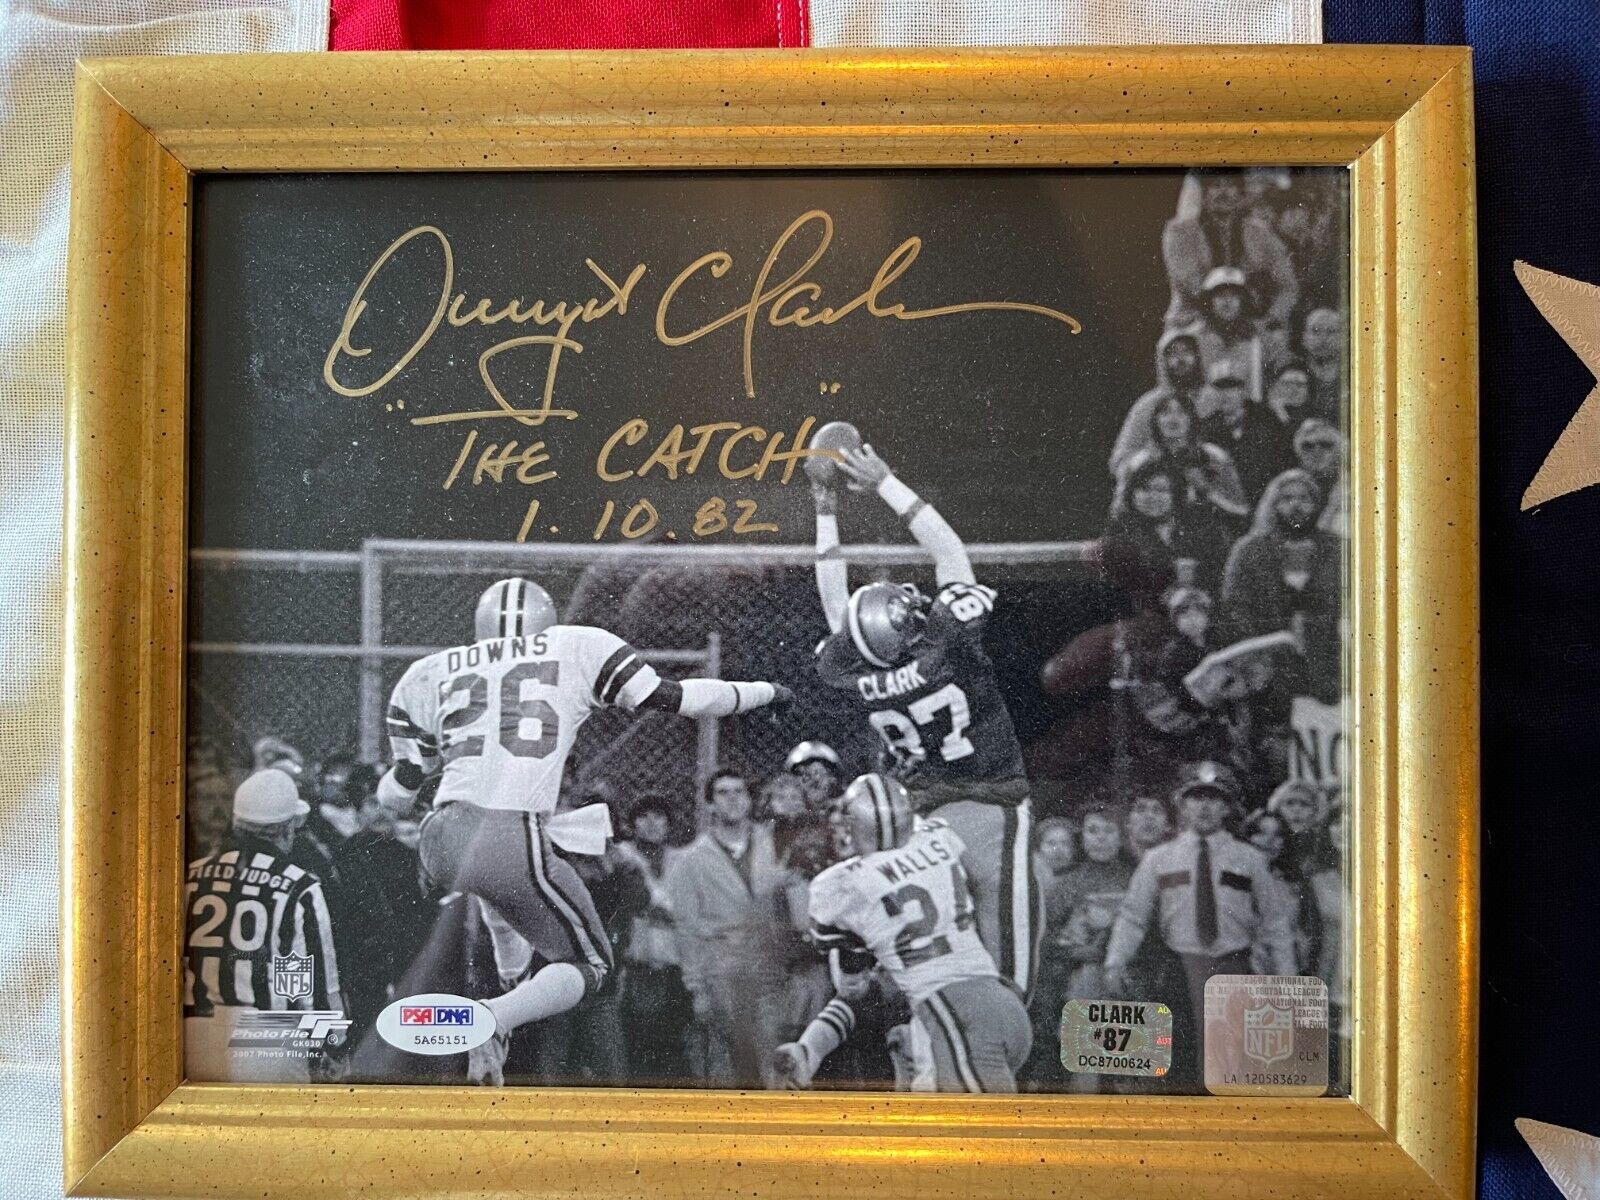 Dwight Clark Signed The Catch 8x10 Autograph PSA, Clark 87, NFL  authentification